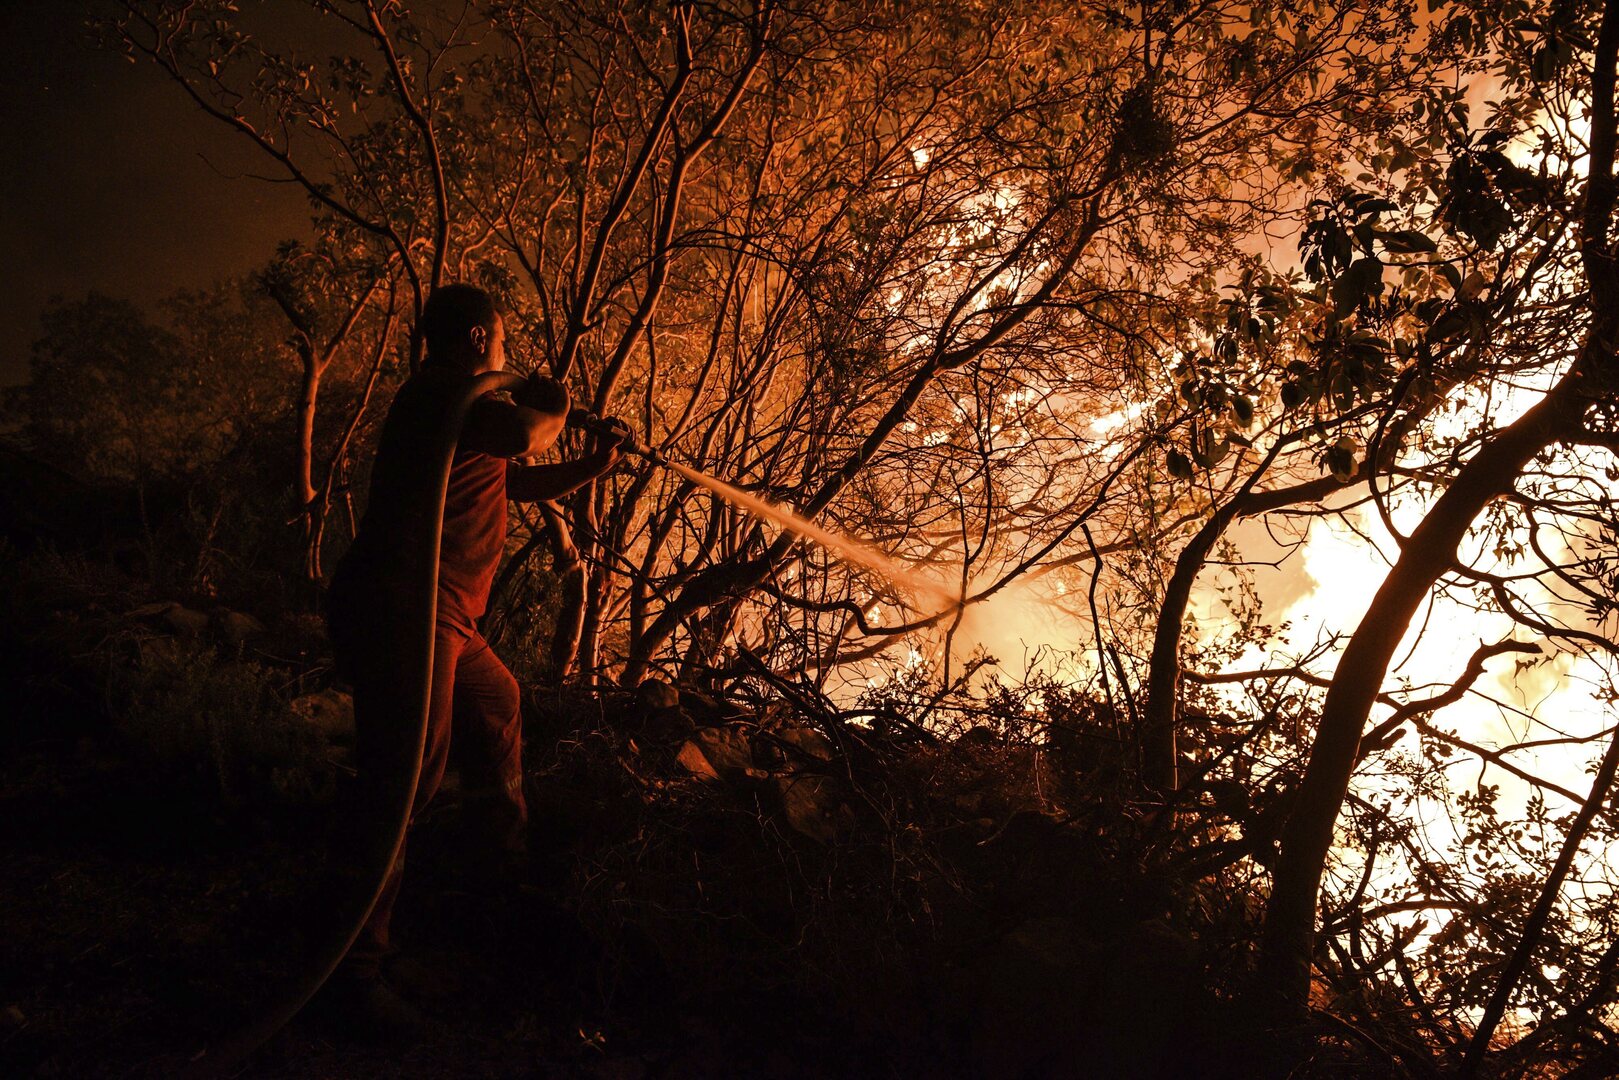 ارتفاع حصيلة ضحايا حرائق غابات جنوب تركيا إلى 4 قتلى